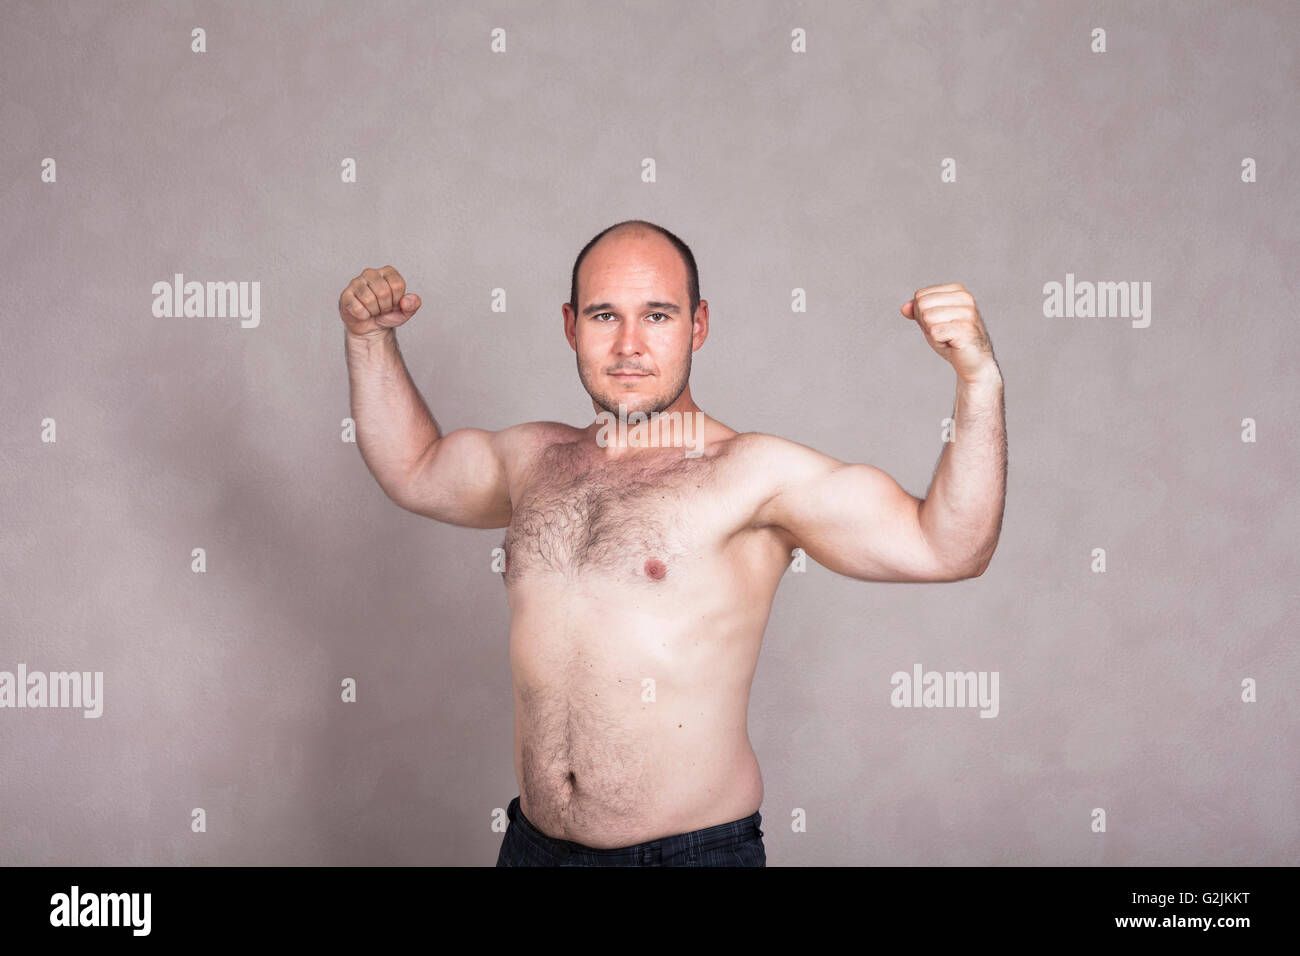 Ritratto di uomo shirtless in posa e mostra le sue forti braccia e corpo peloso. Foto Stock